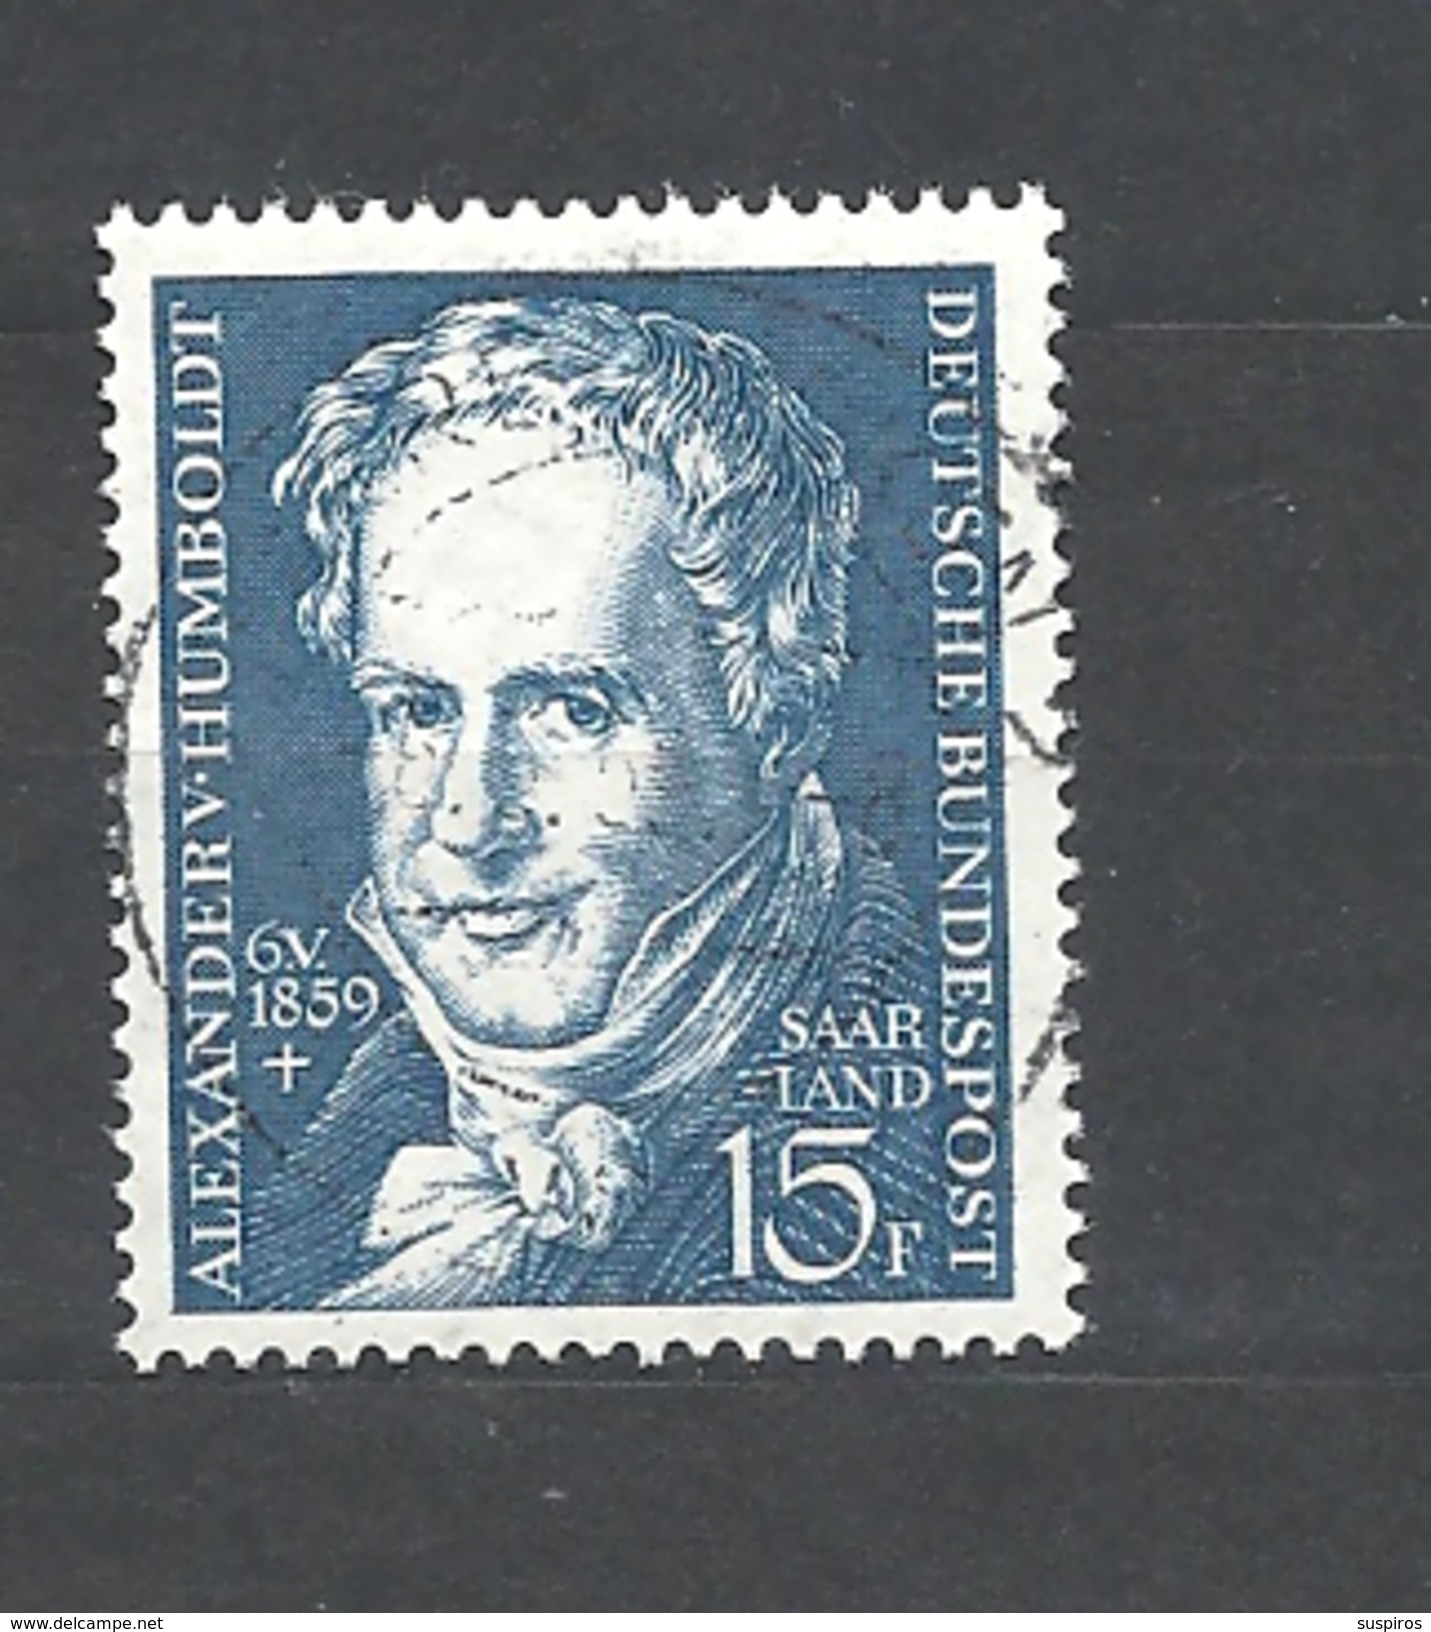 SARRLAND 1959 The 100th Anniversary Of The Death Of Alexander Von Humboldt USED - Gebraucht